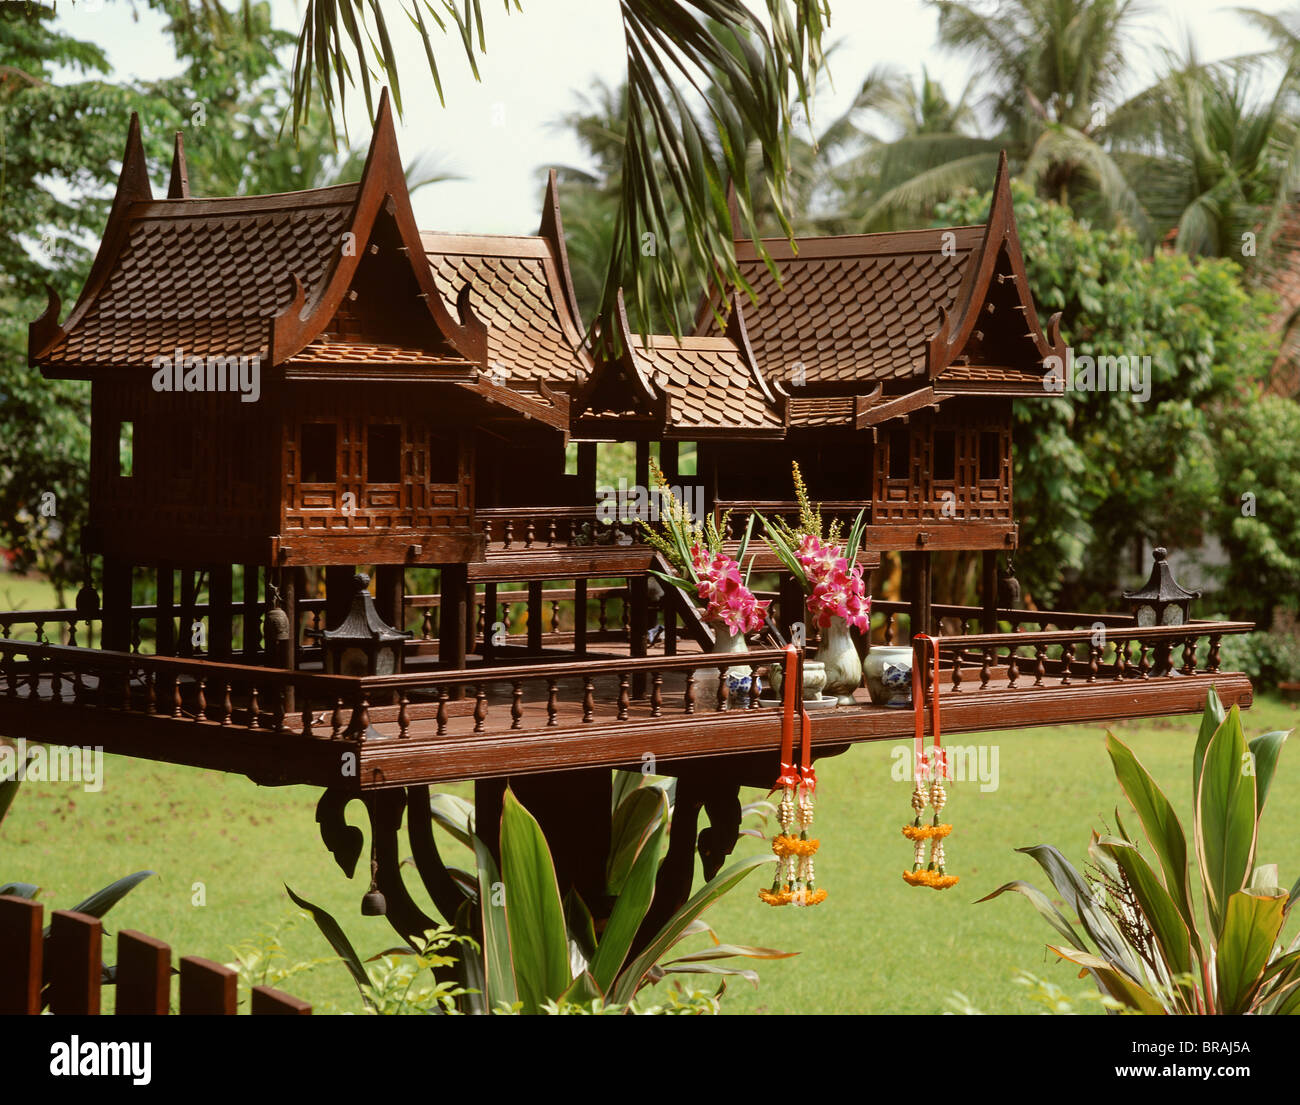 Spirit House dans la forme d'une maison de style traditionnel thaï, Bangkok, Thaïlande, Asie du Sud-Est, Asie Banque D'Images